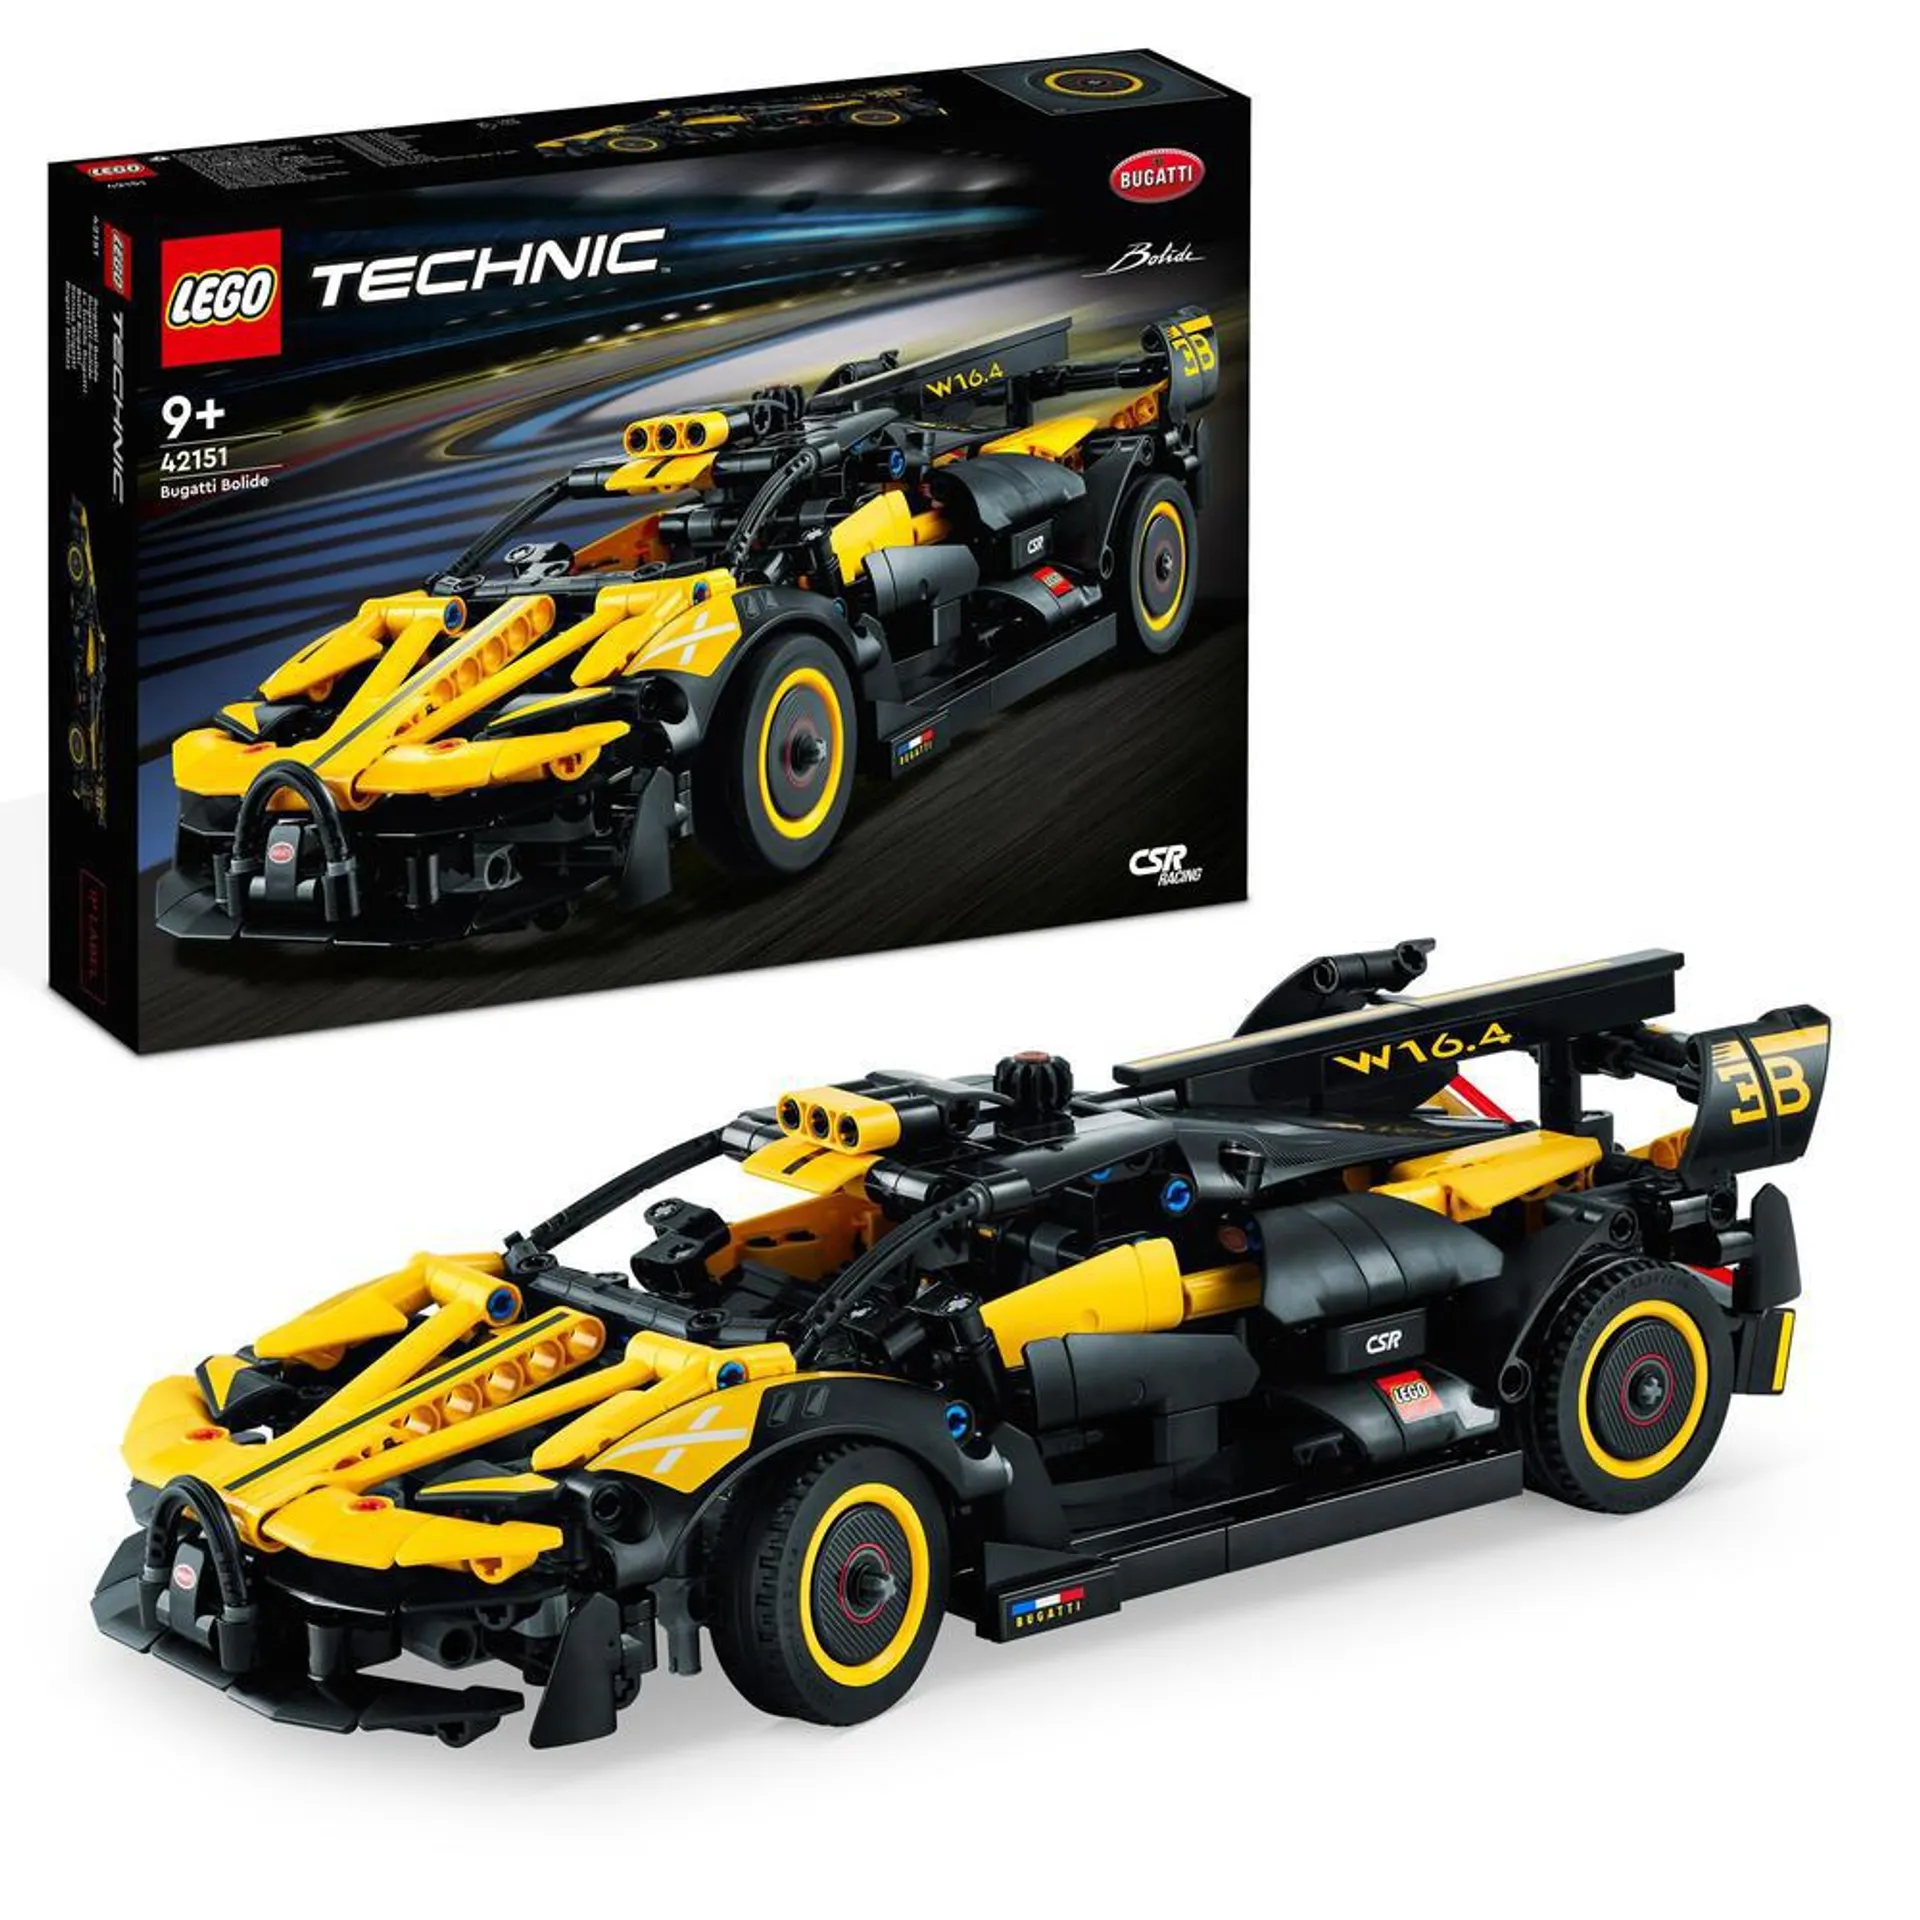 LEGO® 42151 Technic Bugatti Bolide Model Car Toy Building Set